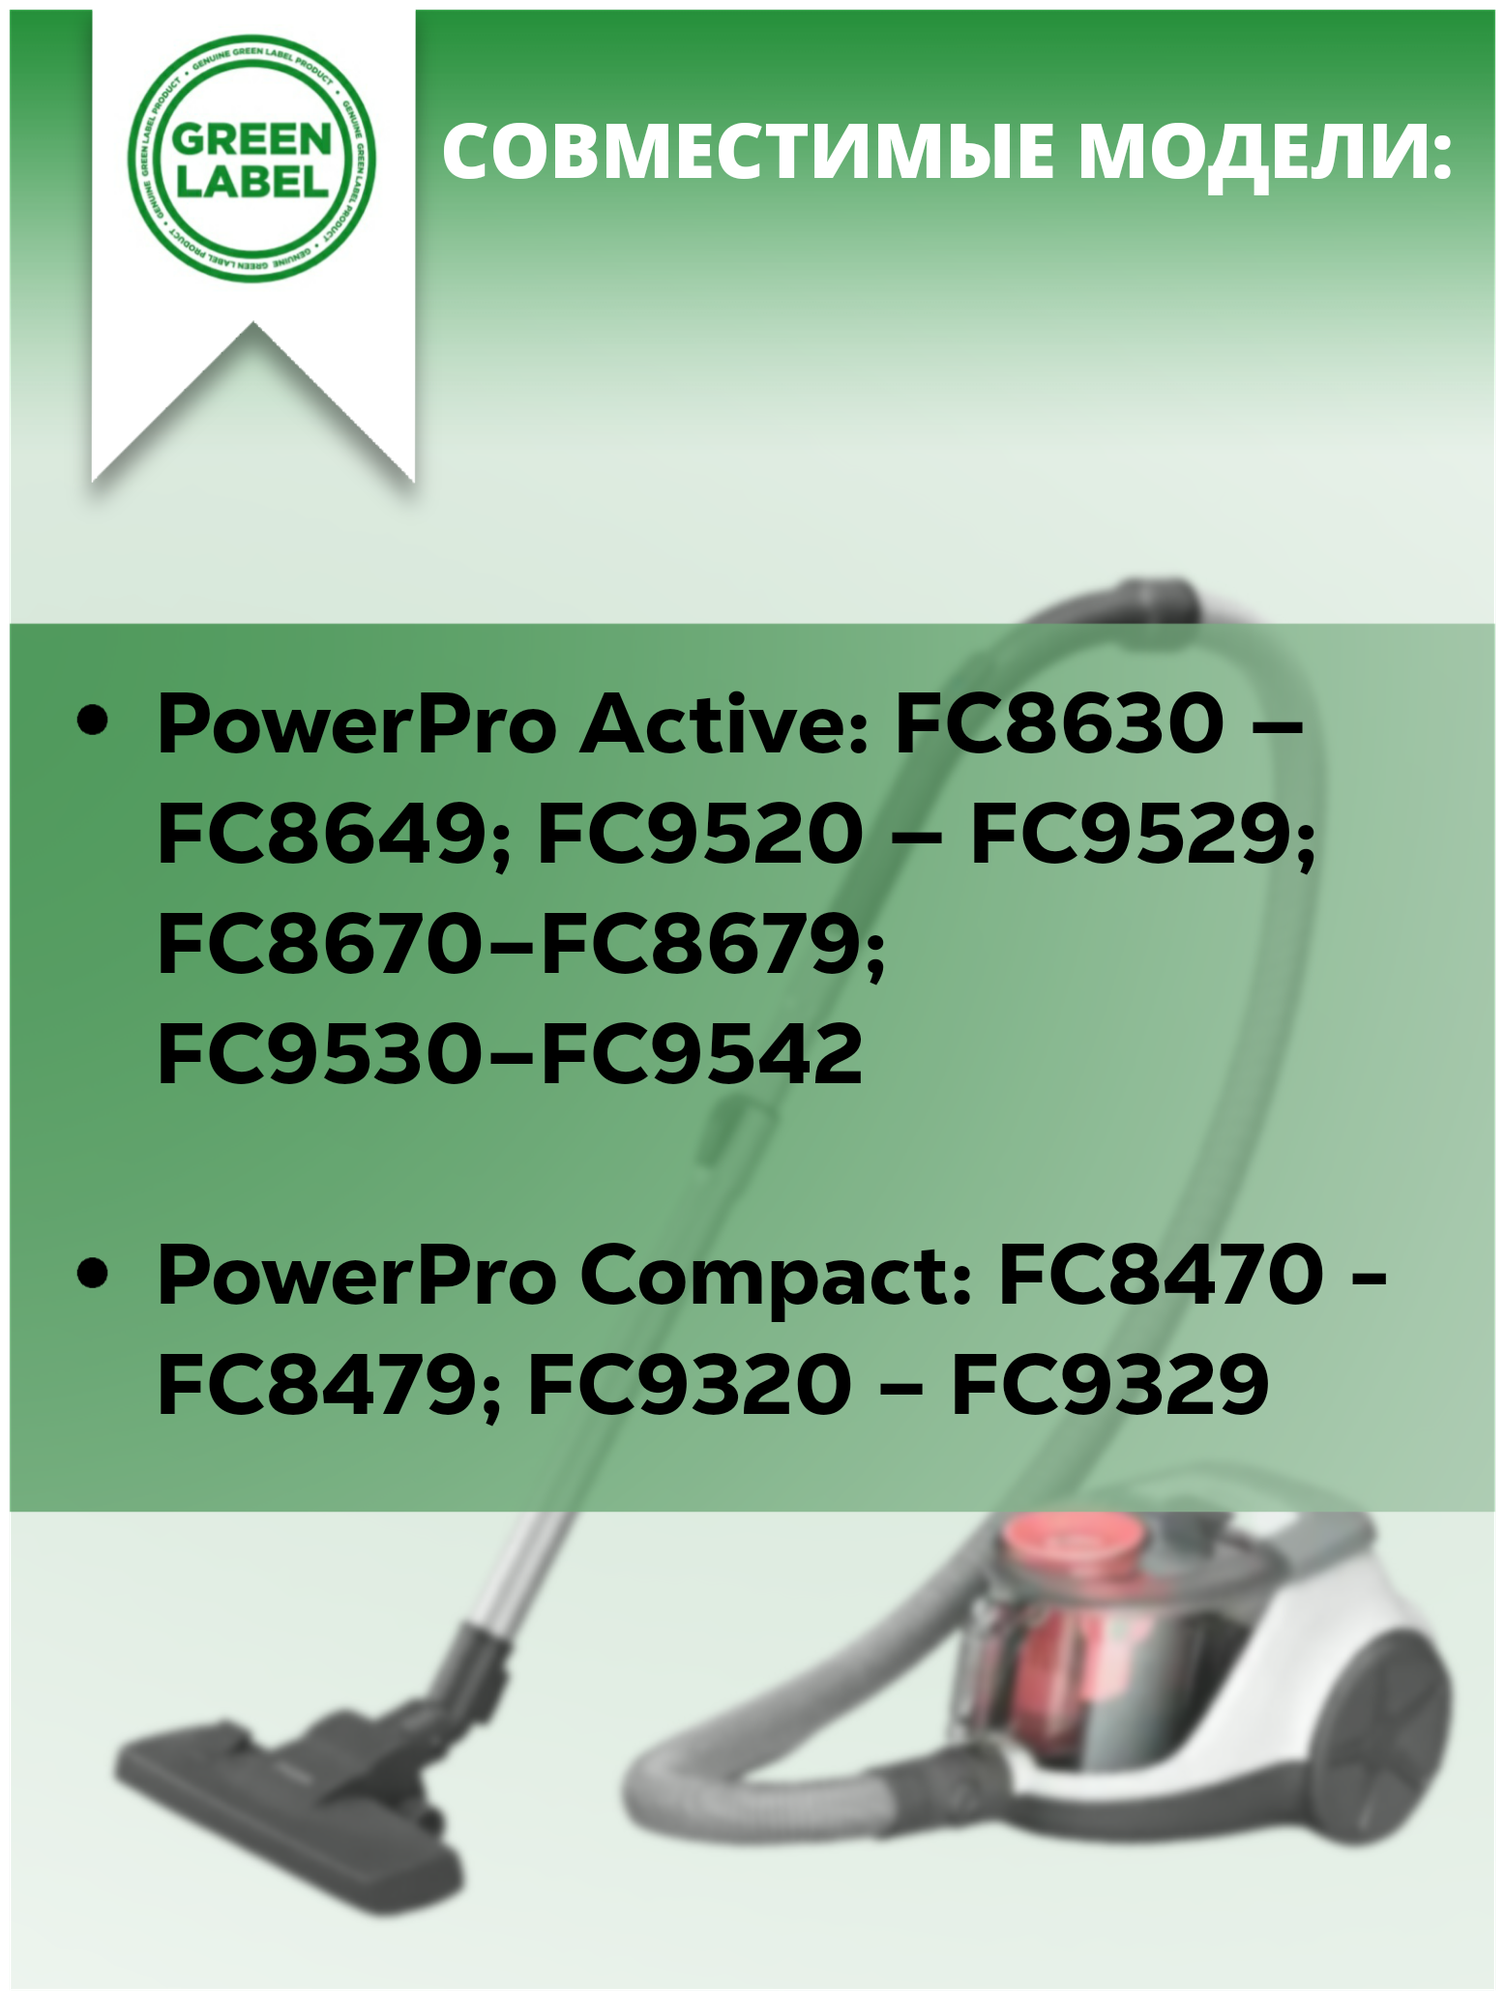 Набор фильтров для пылесосов Philips серий PowerPro Active и PowerPro Compact